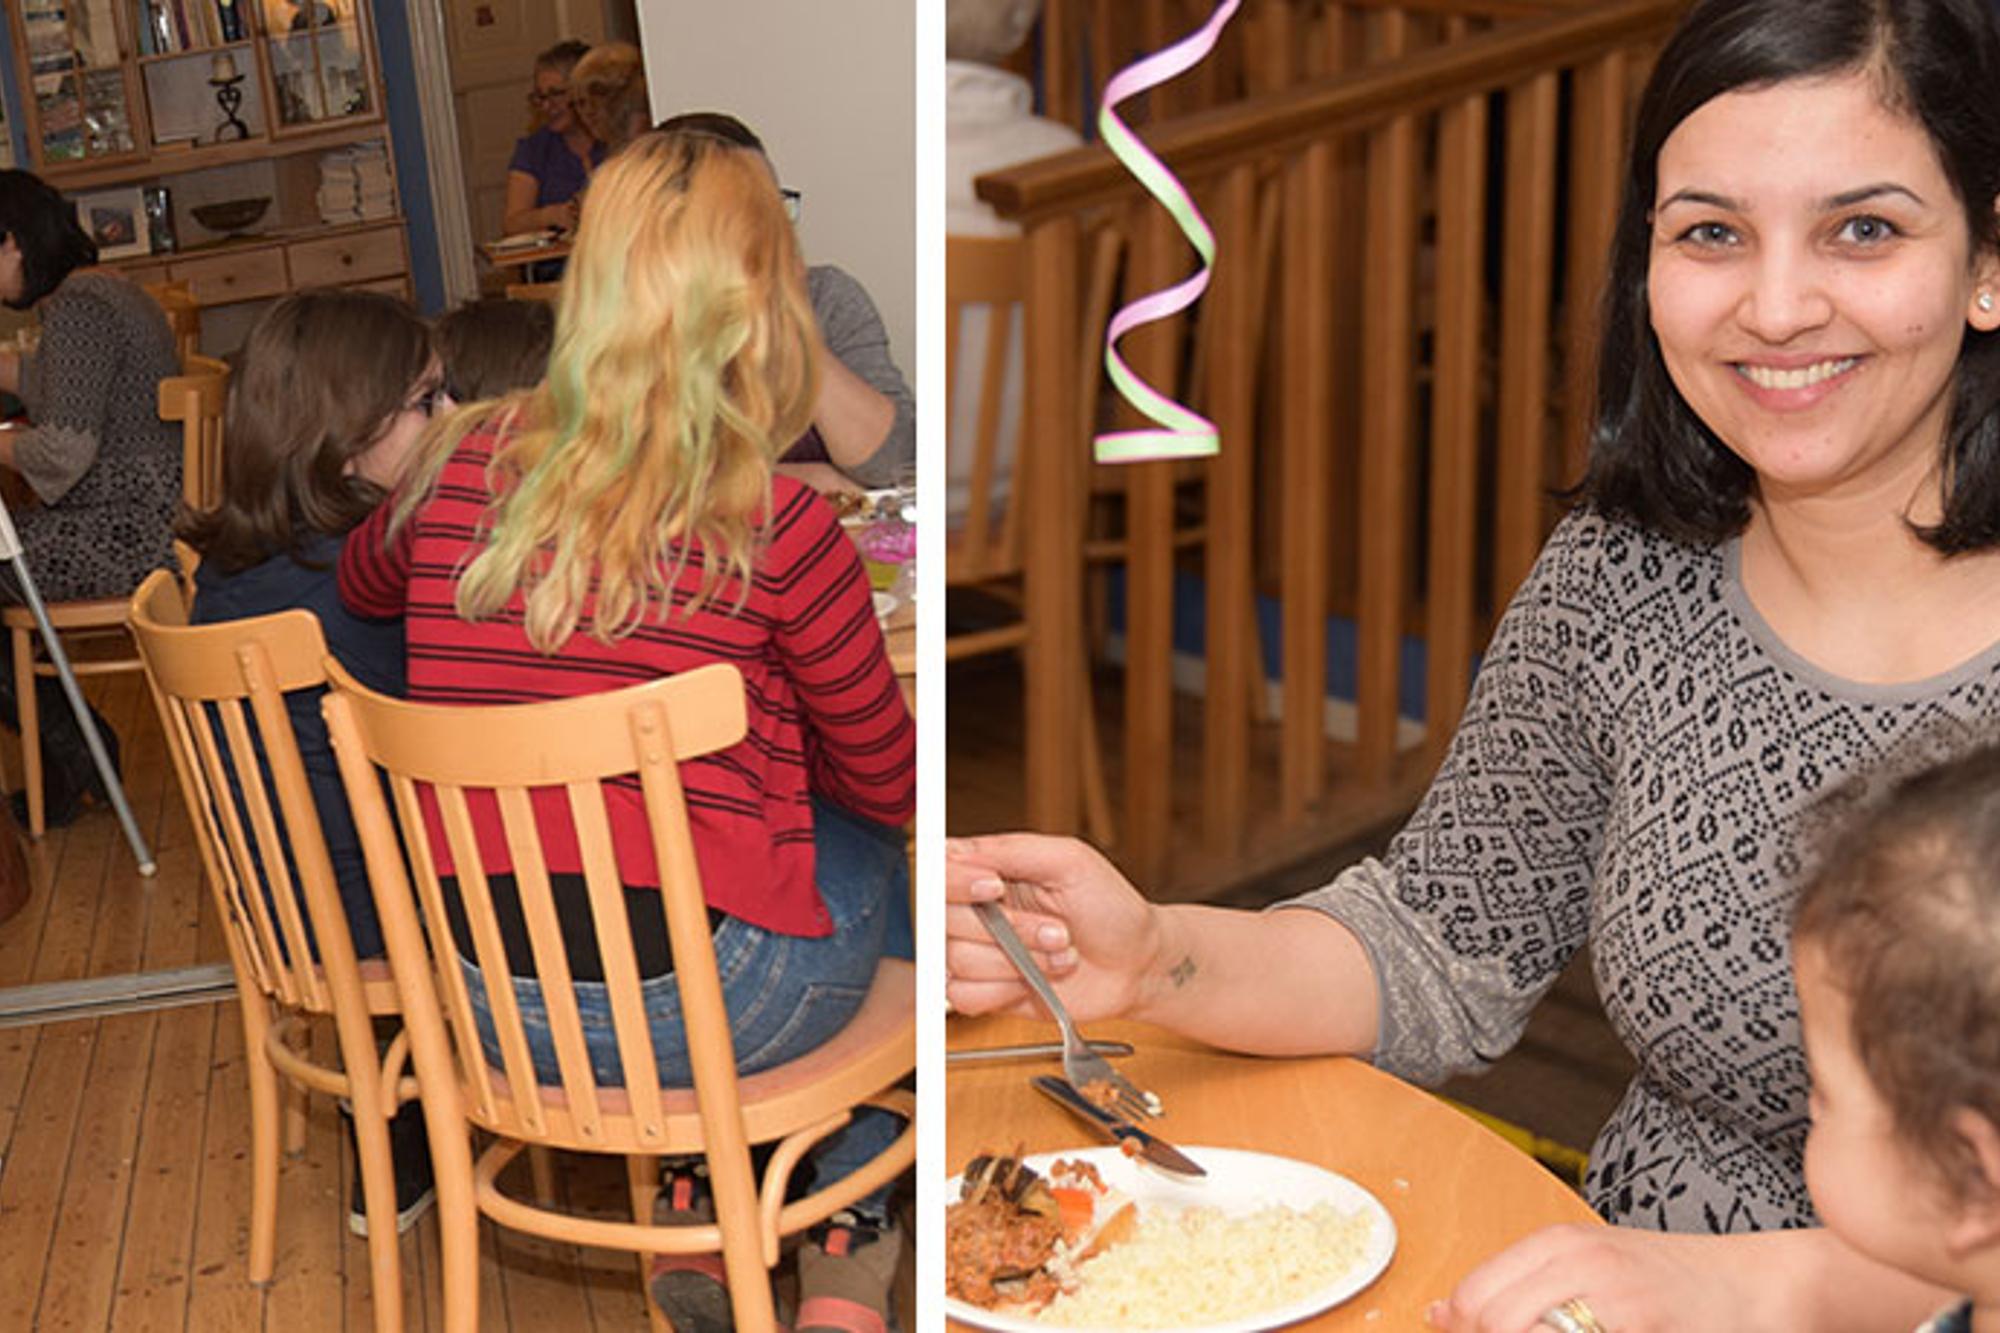 Till vänster: Olika bord med familjer som sitter och äter. Till höger: En glad kvinna som tittar in i kameran. Bredvid henne sitter en ung flicka.